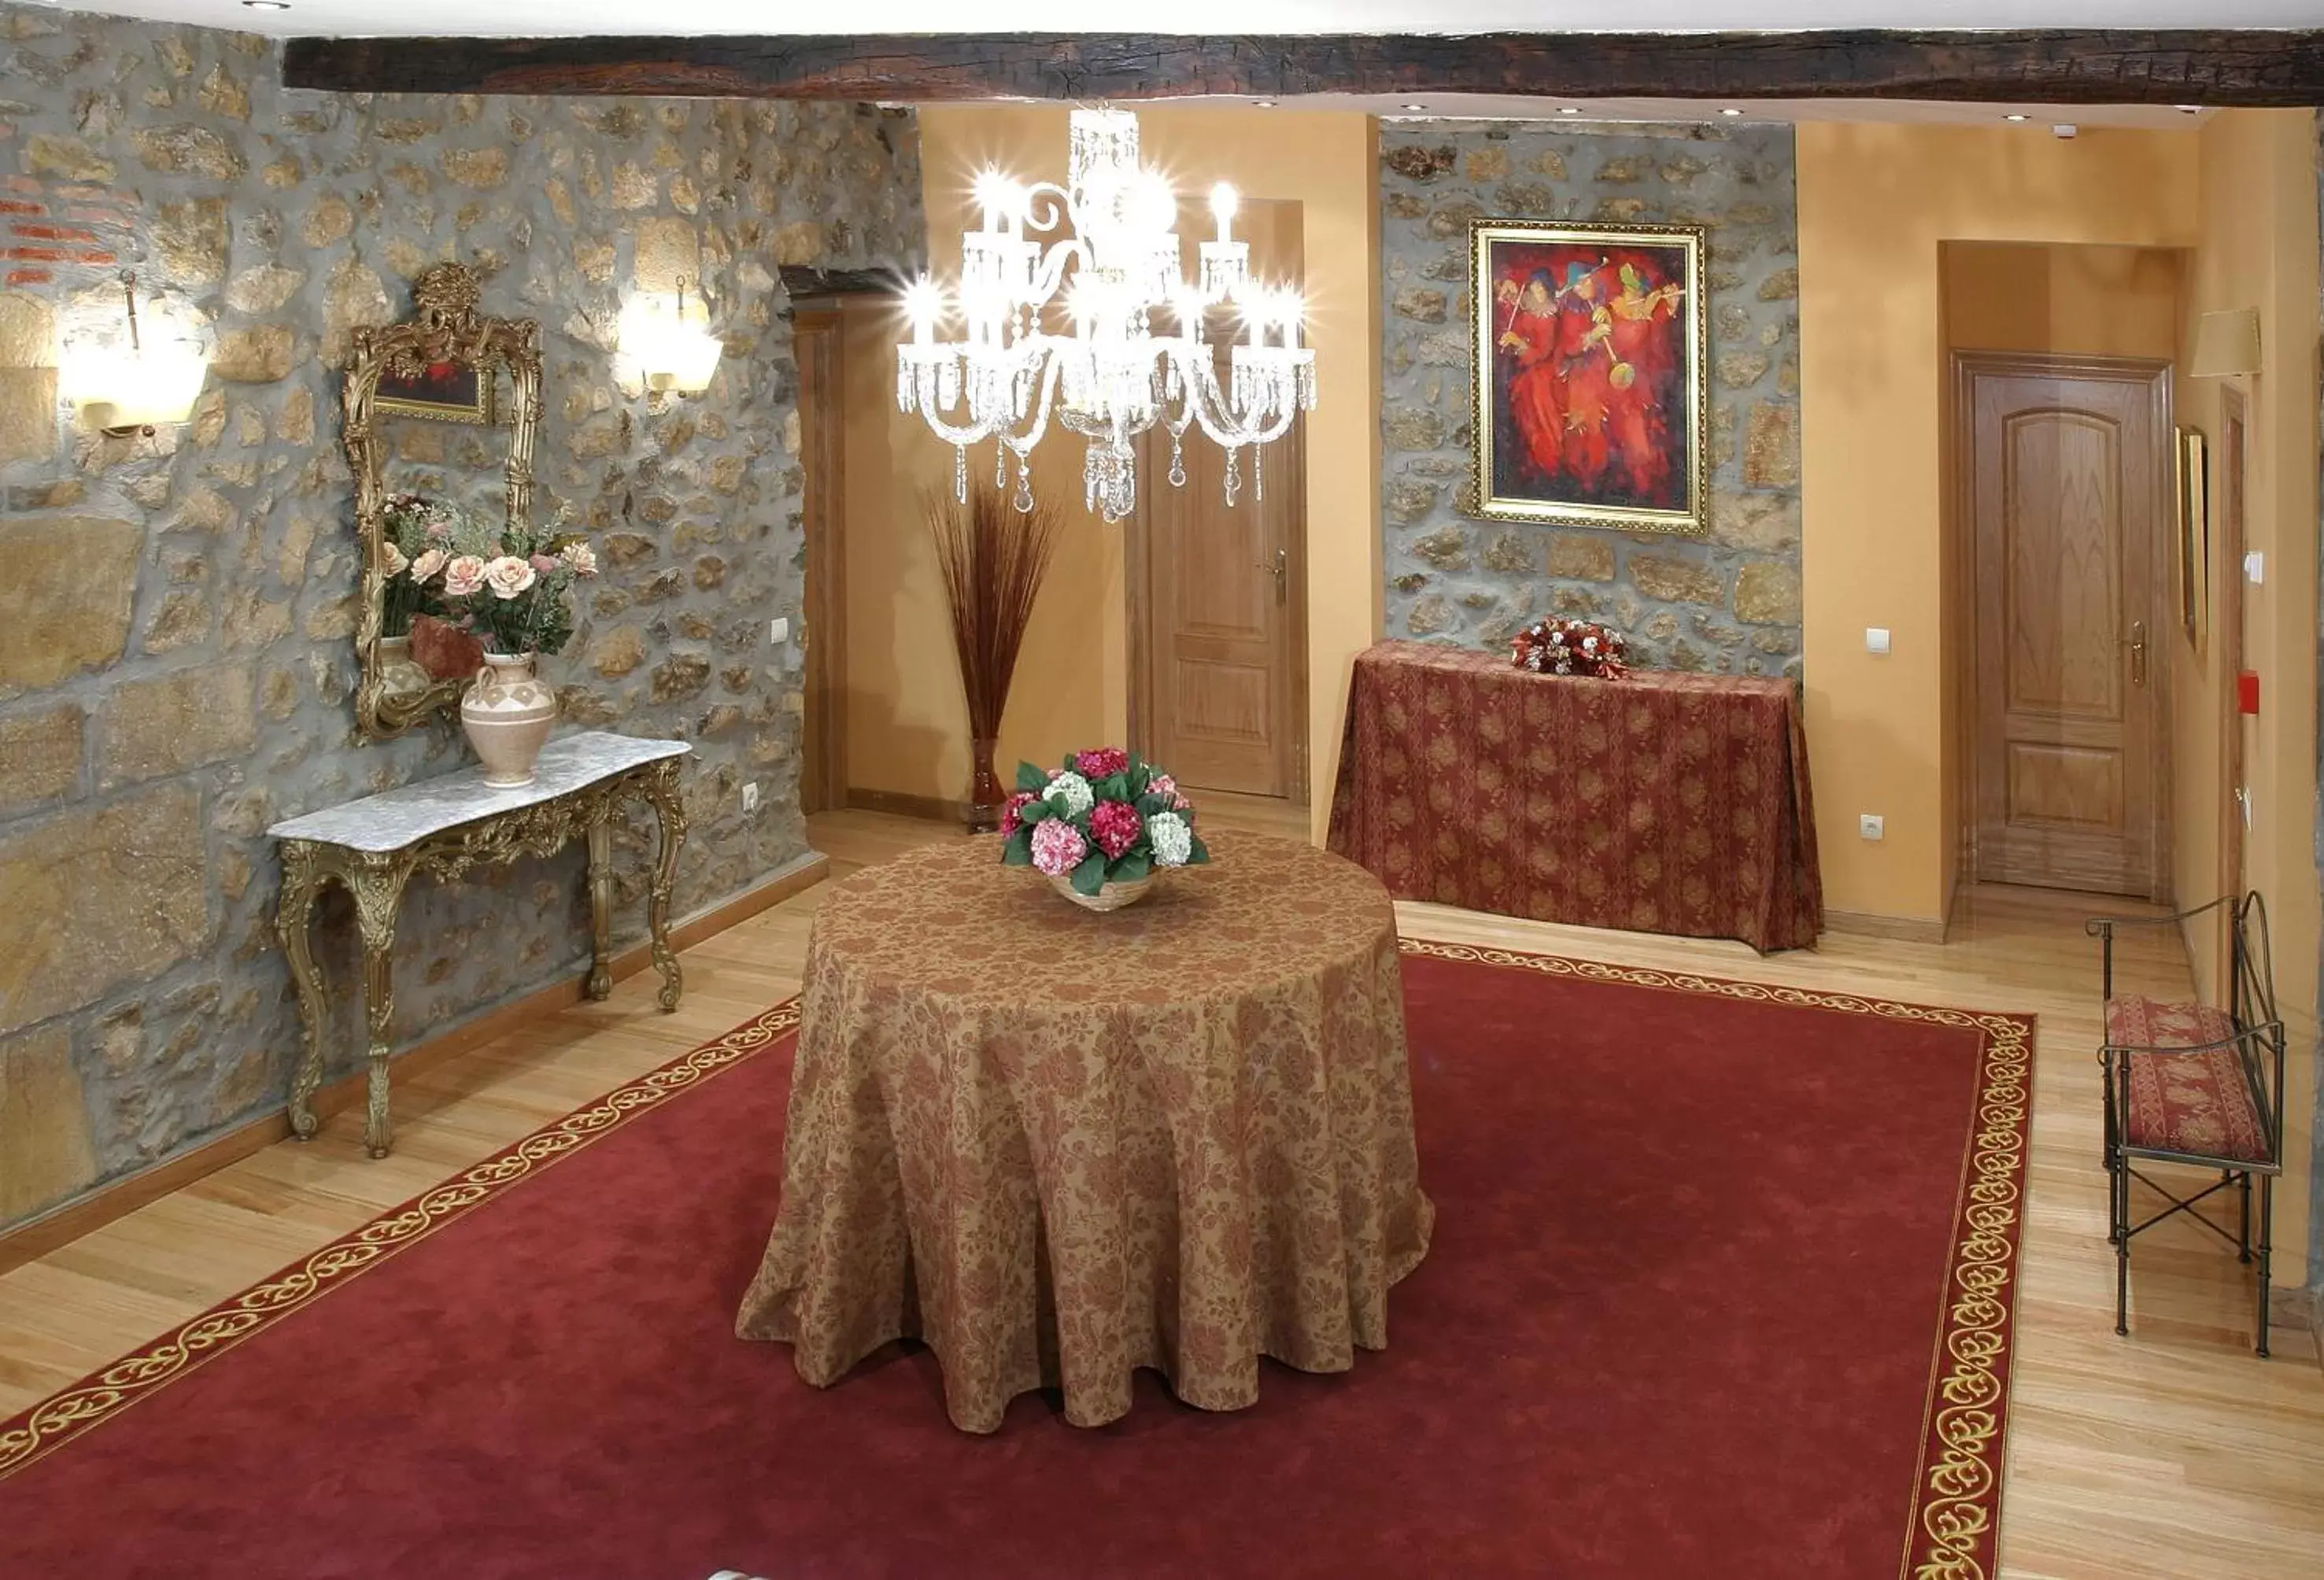 Lobby or reception in Palacio Garcia Quijano